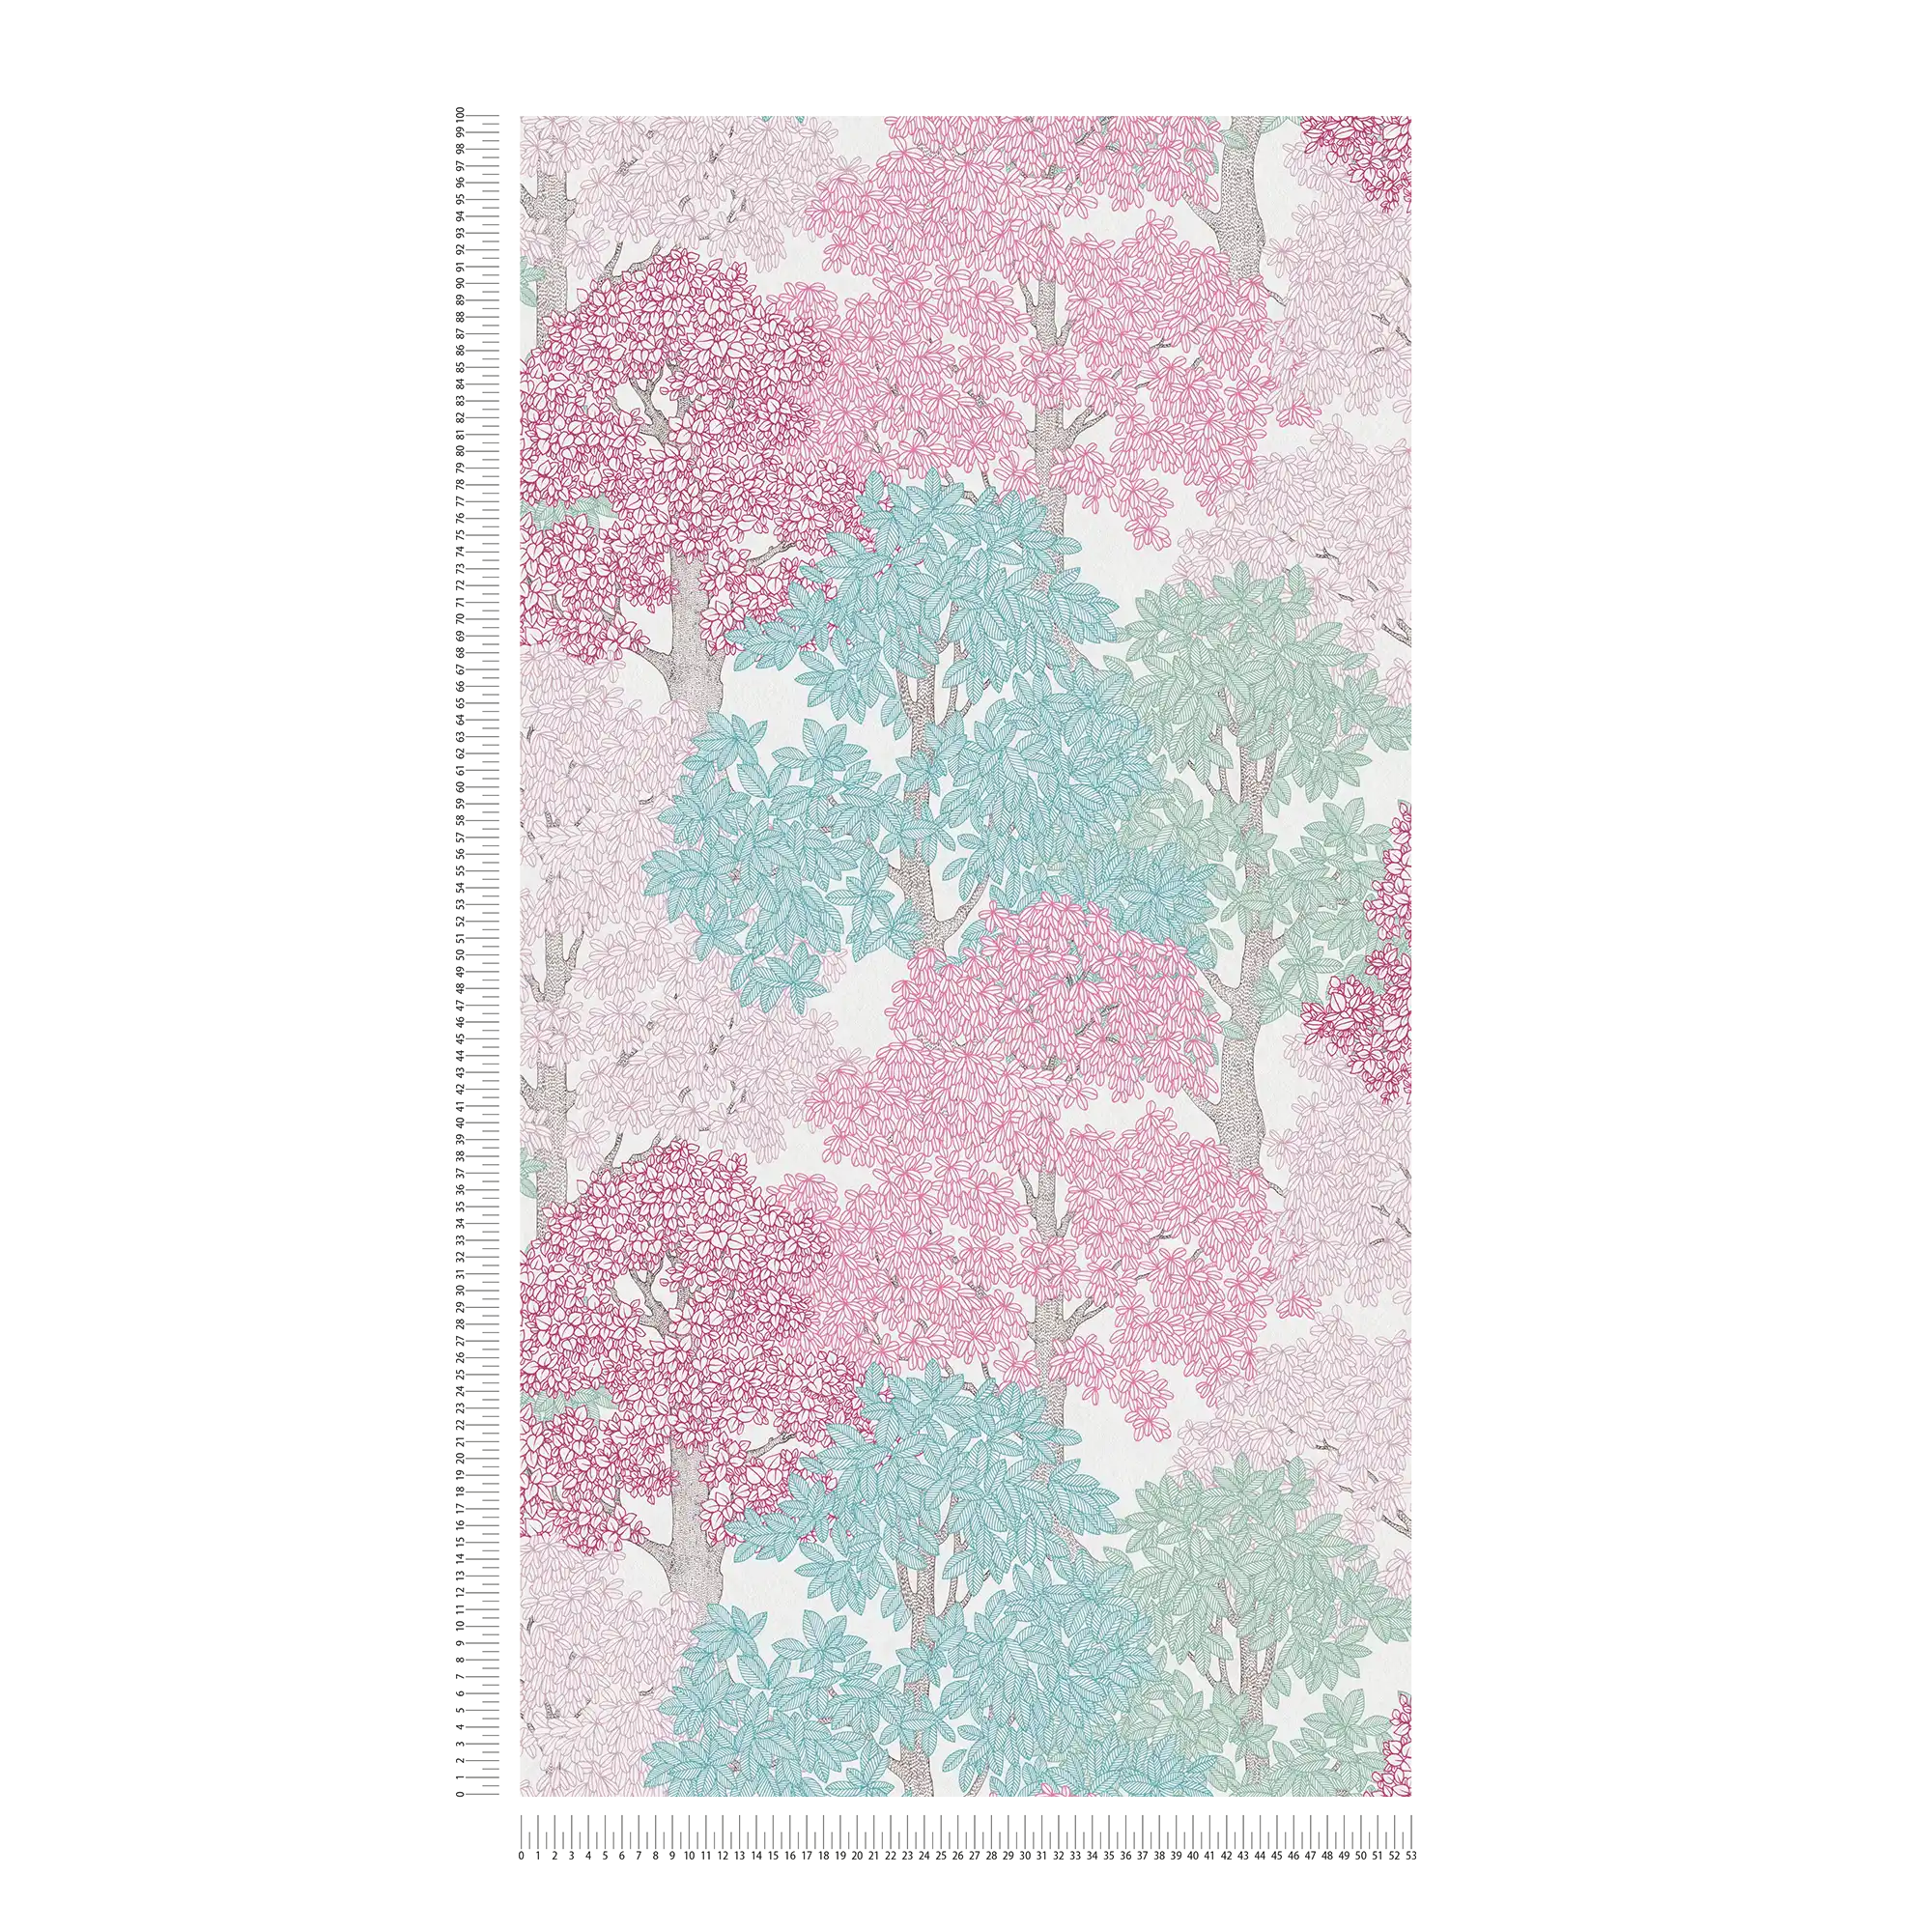             Papier peint Forêt Design style dessin avec cimes d'arbres - rose, bleu, blanc
        